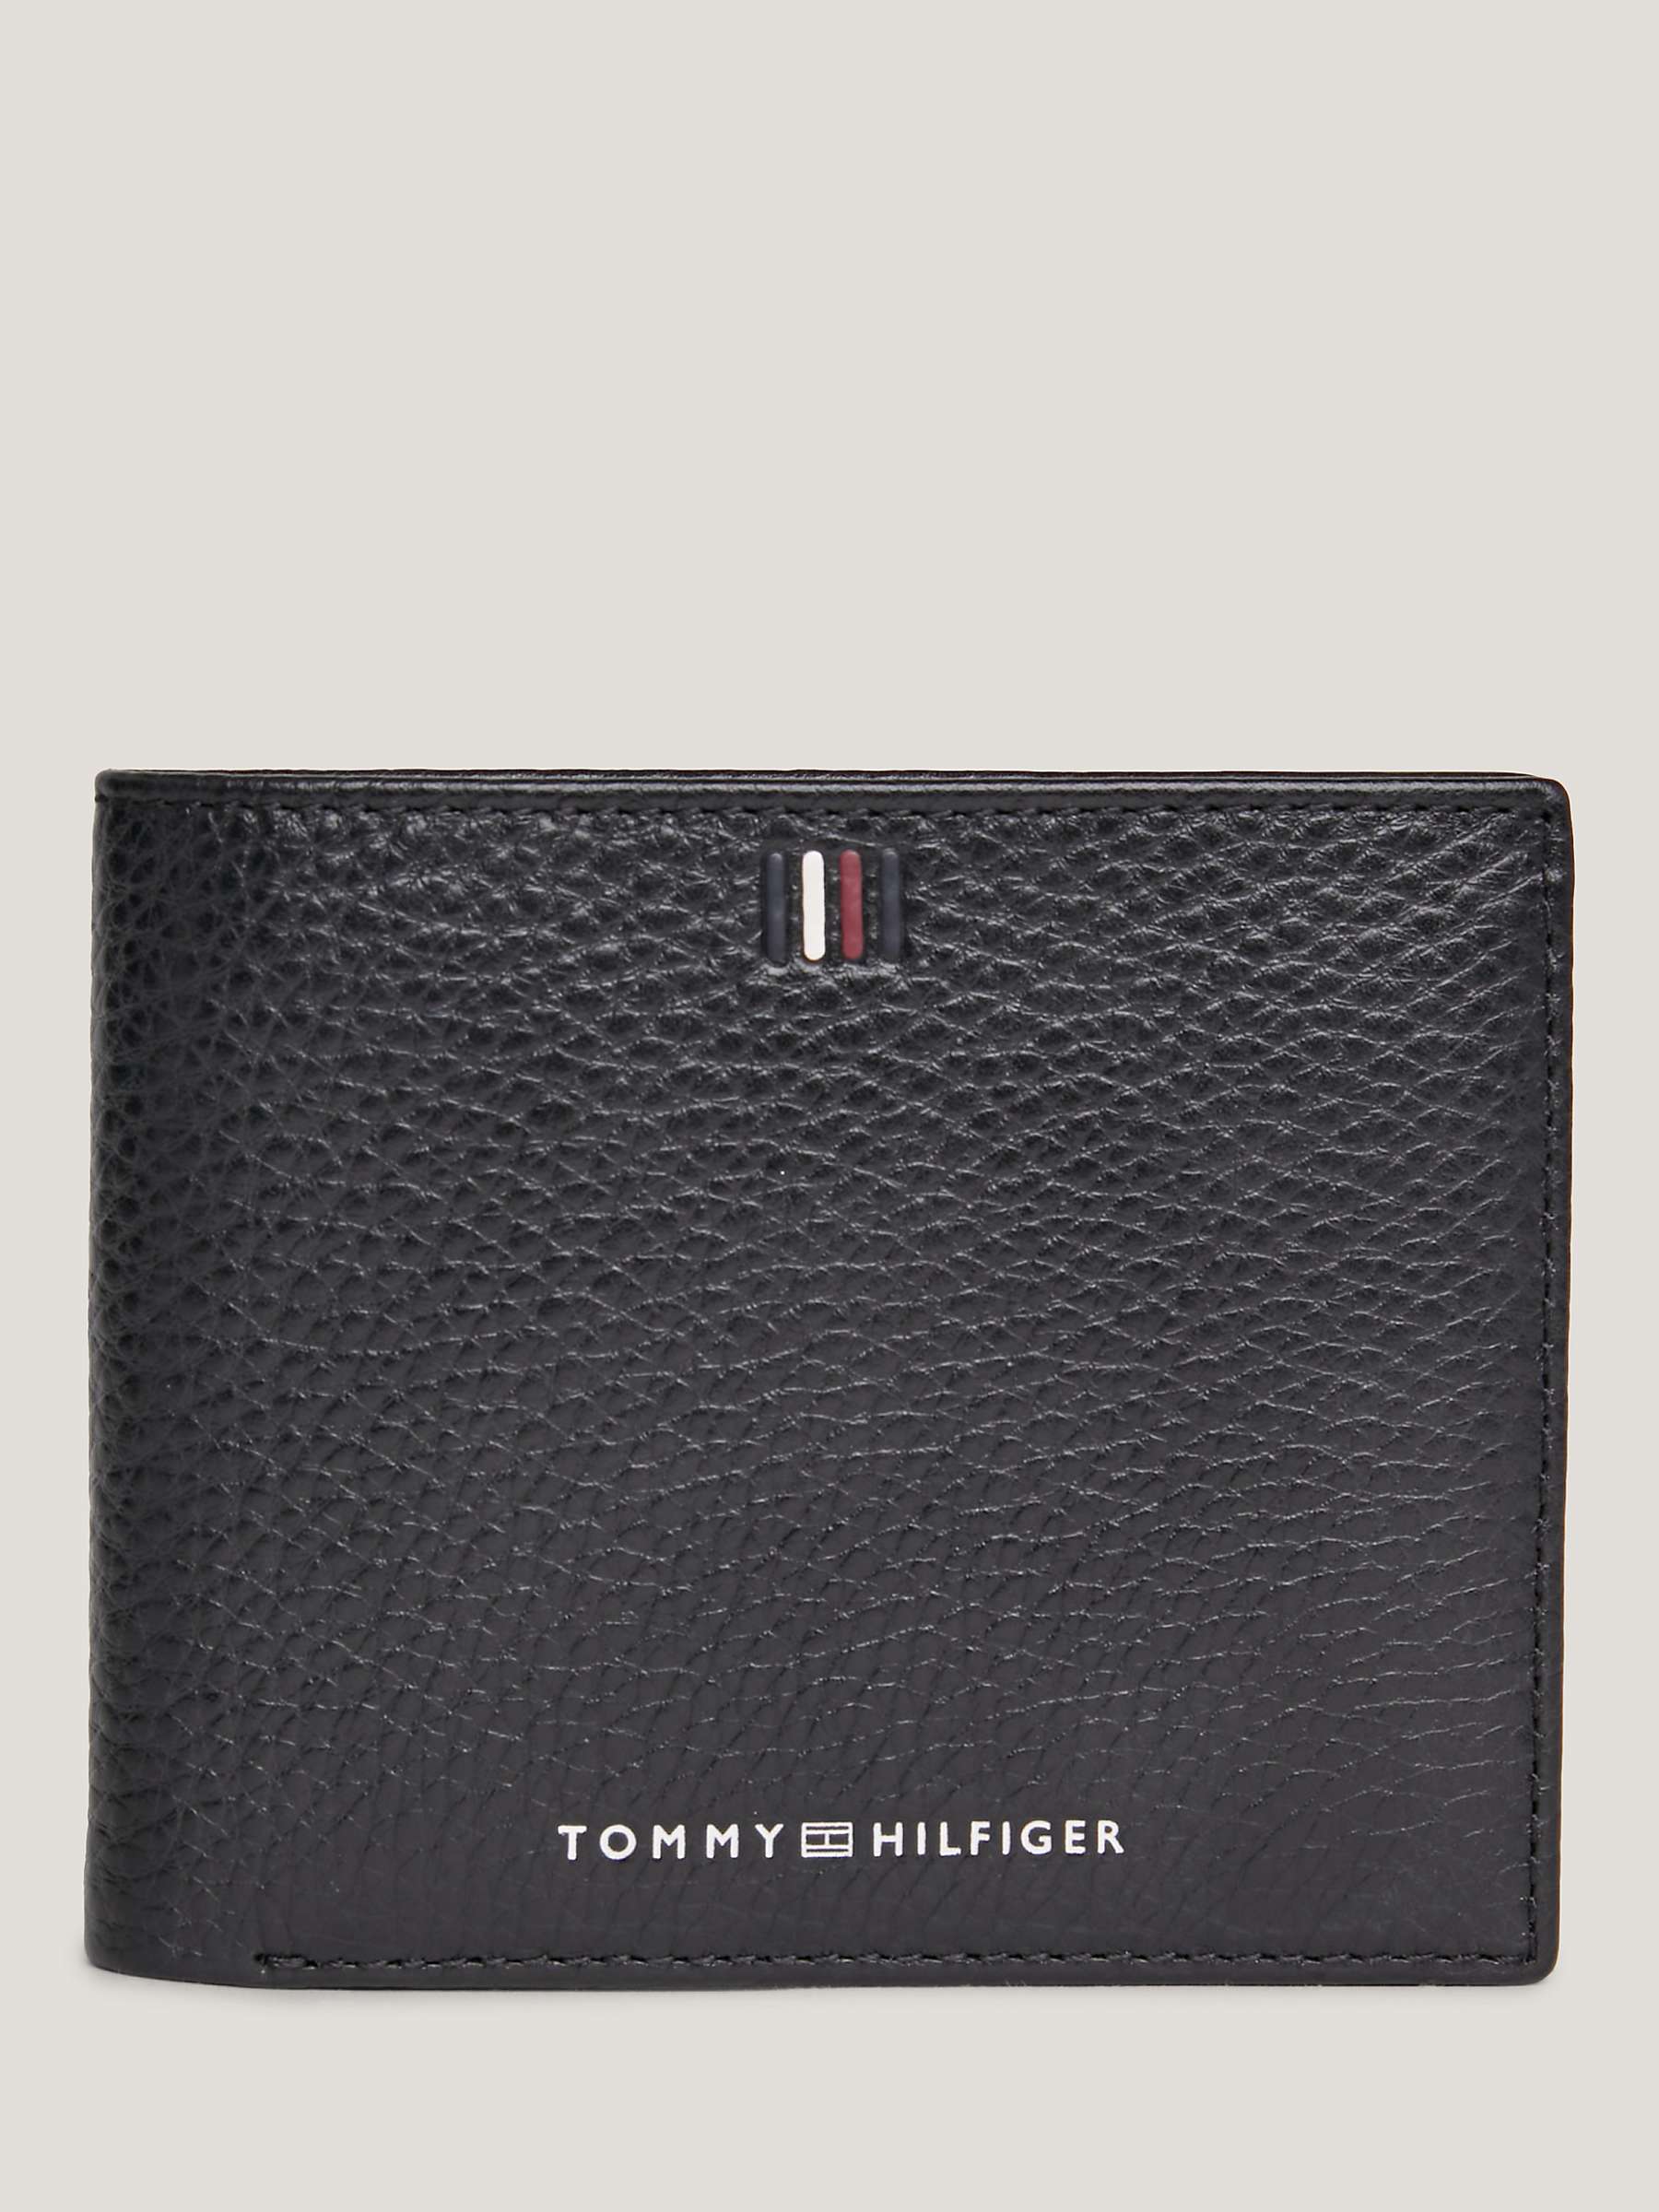 Buy Tommy Hilfiger Central Card Holder, Black Online at johnlewis.com